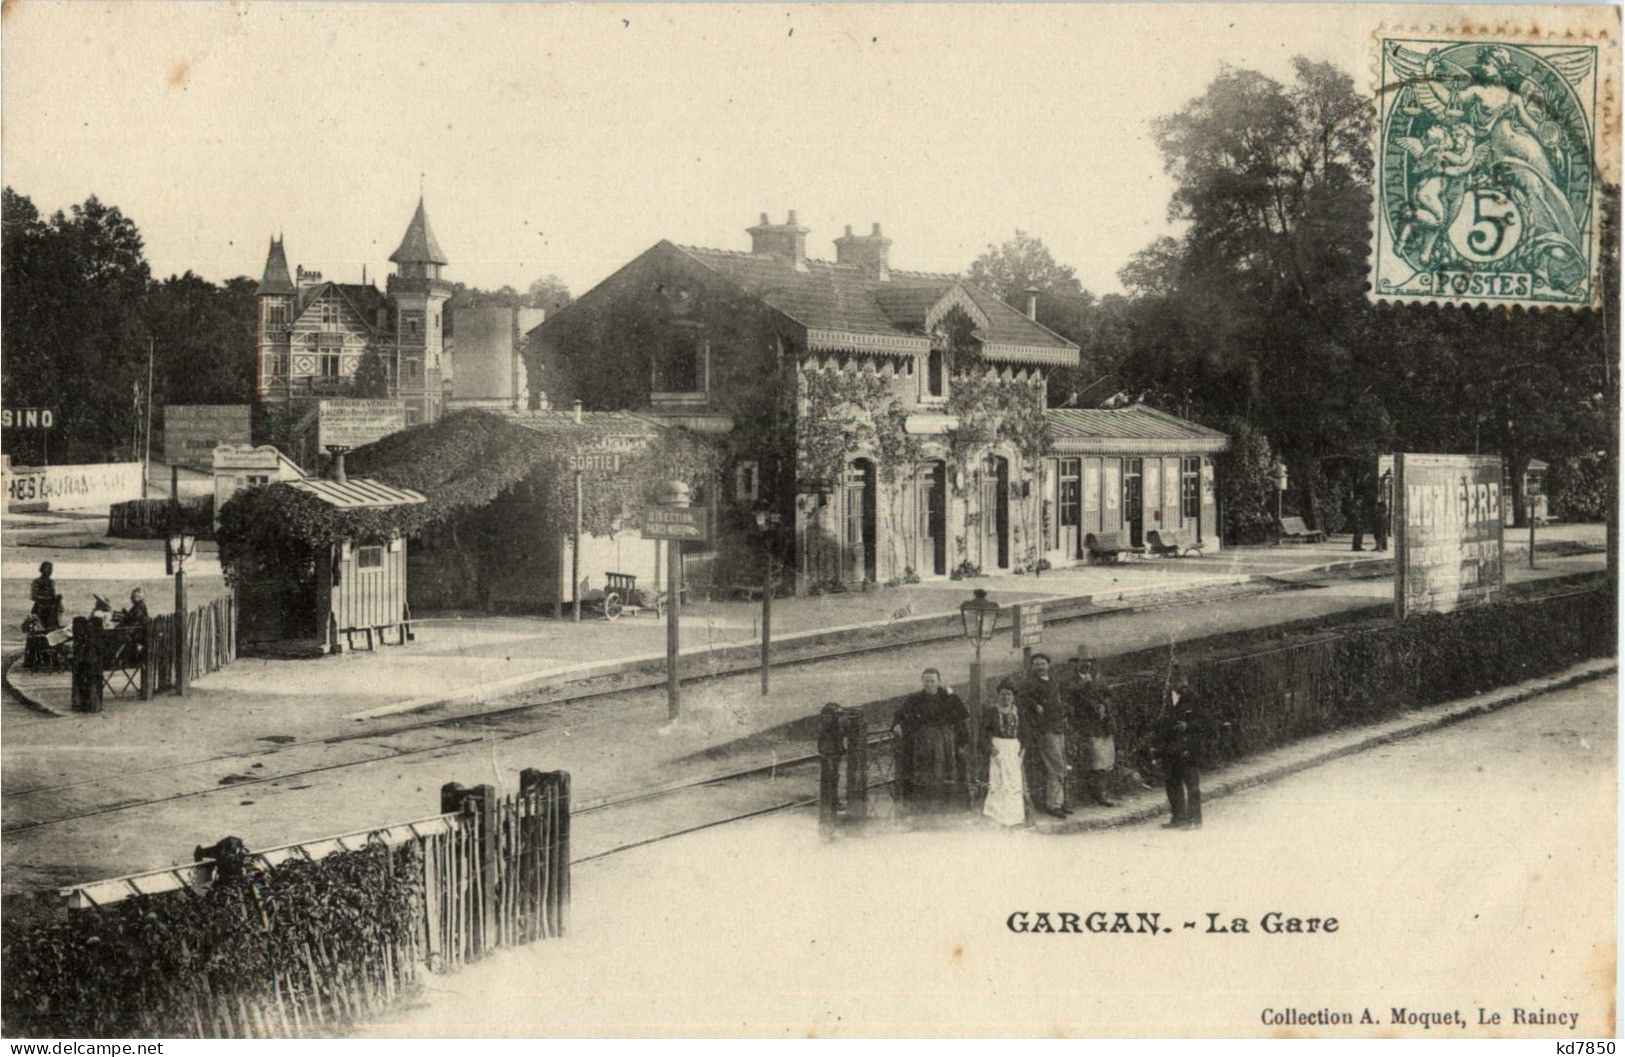 Gargan - La Gare - Livry Gargan